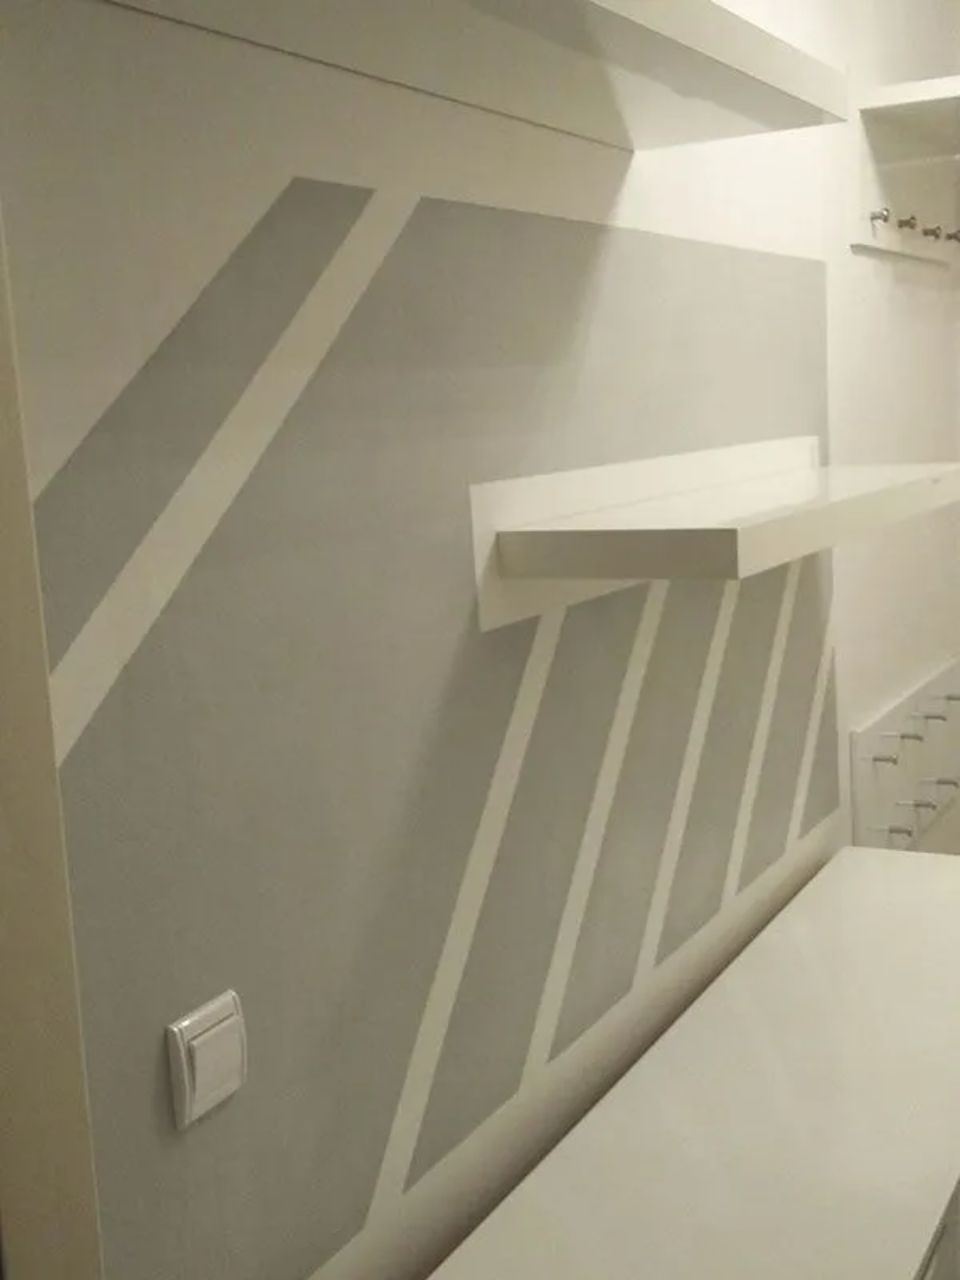 Malerarbeiten mit Streifen in Grau, ausgeführt durch ARAGON Projektentwicklung & Bauwerksanierung GmbH